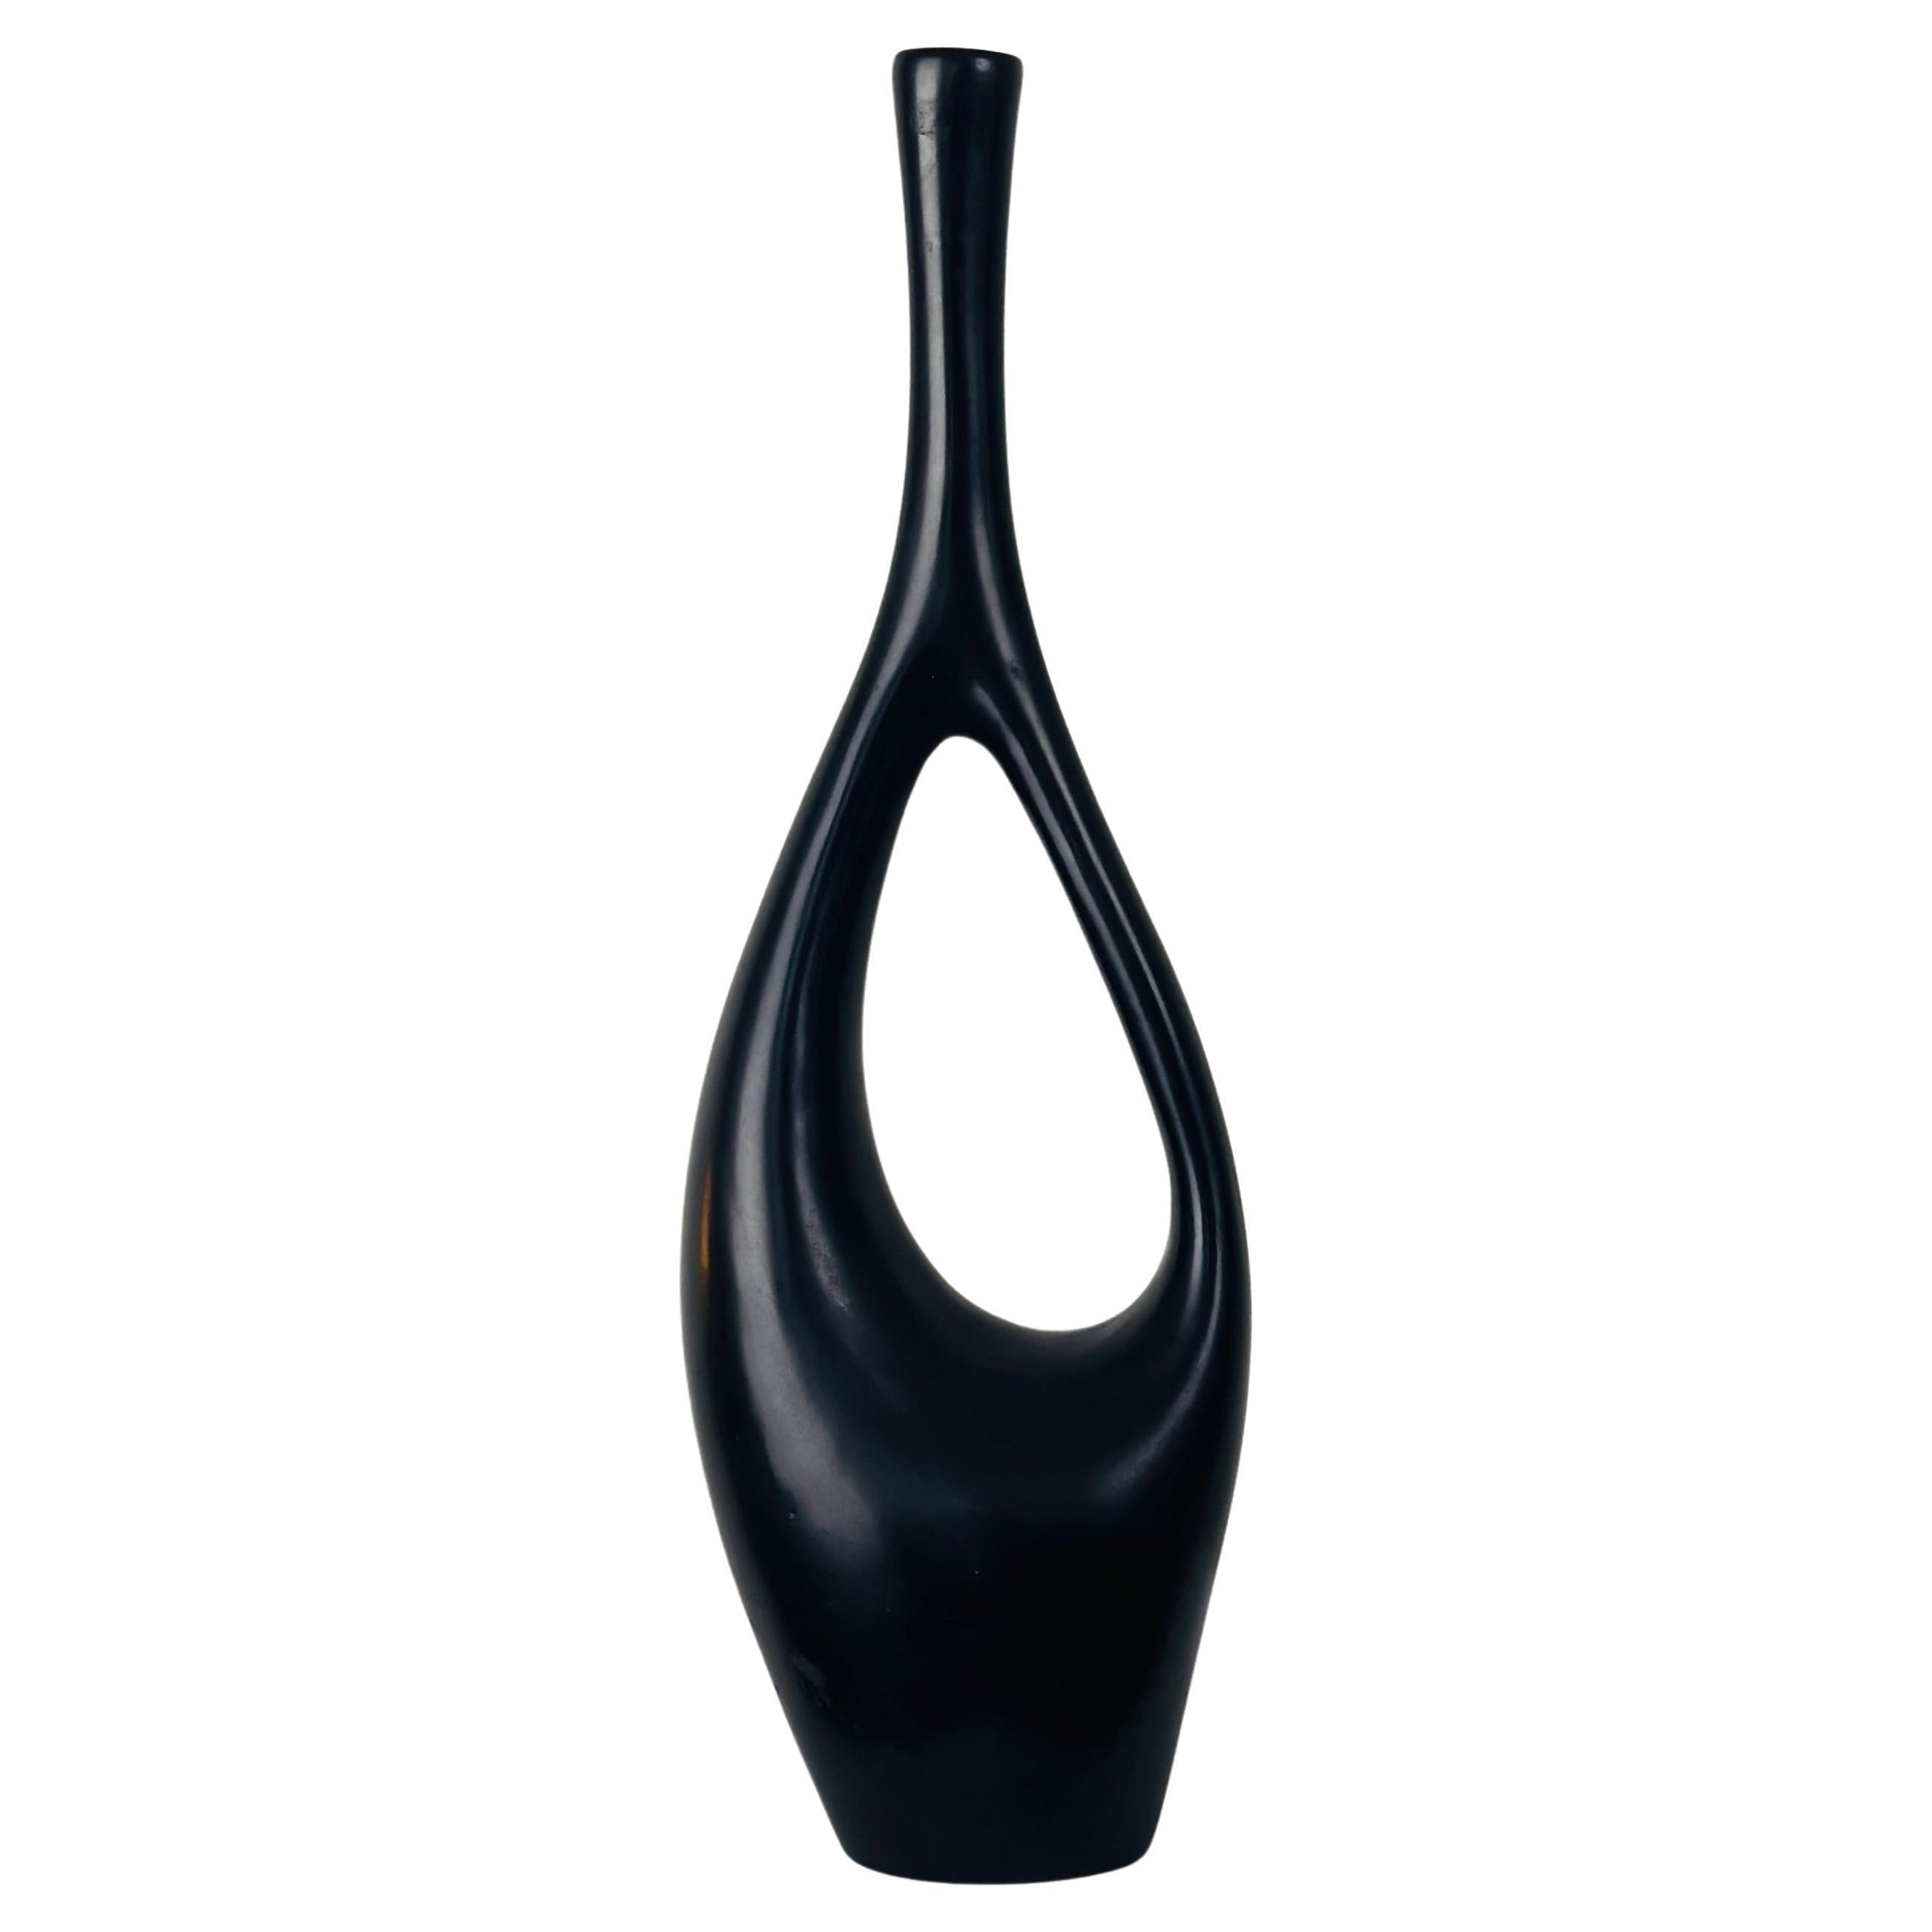 Grand vase Soliflores avec anse en céramique noire par Jean André Doucin, vers 1950.
Hauteur 42 cm
Très élégante
Signature incisée sur le fond
Parfait état